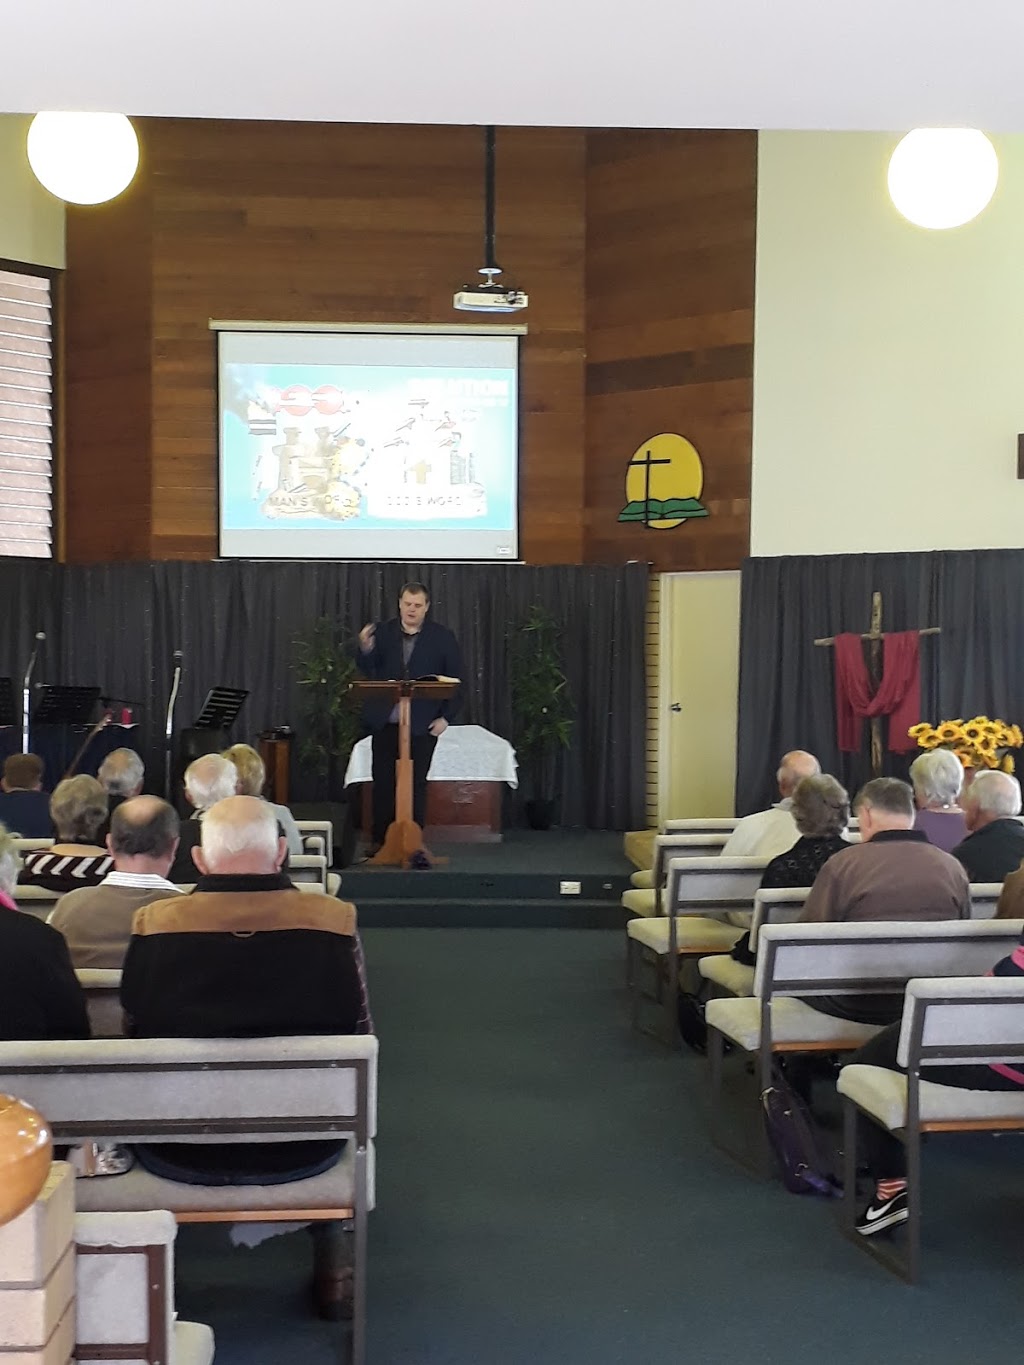 Tenthill Baptist Church | church | 979 Tenthill Creek Rd, Upper Tenthill QLD 4343, Australia | 0754627380 OR +61 7 5462 7380